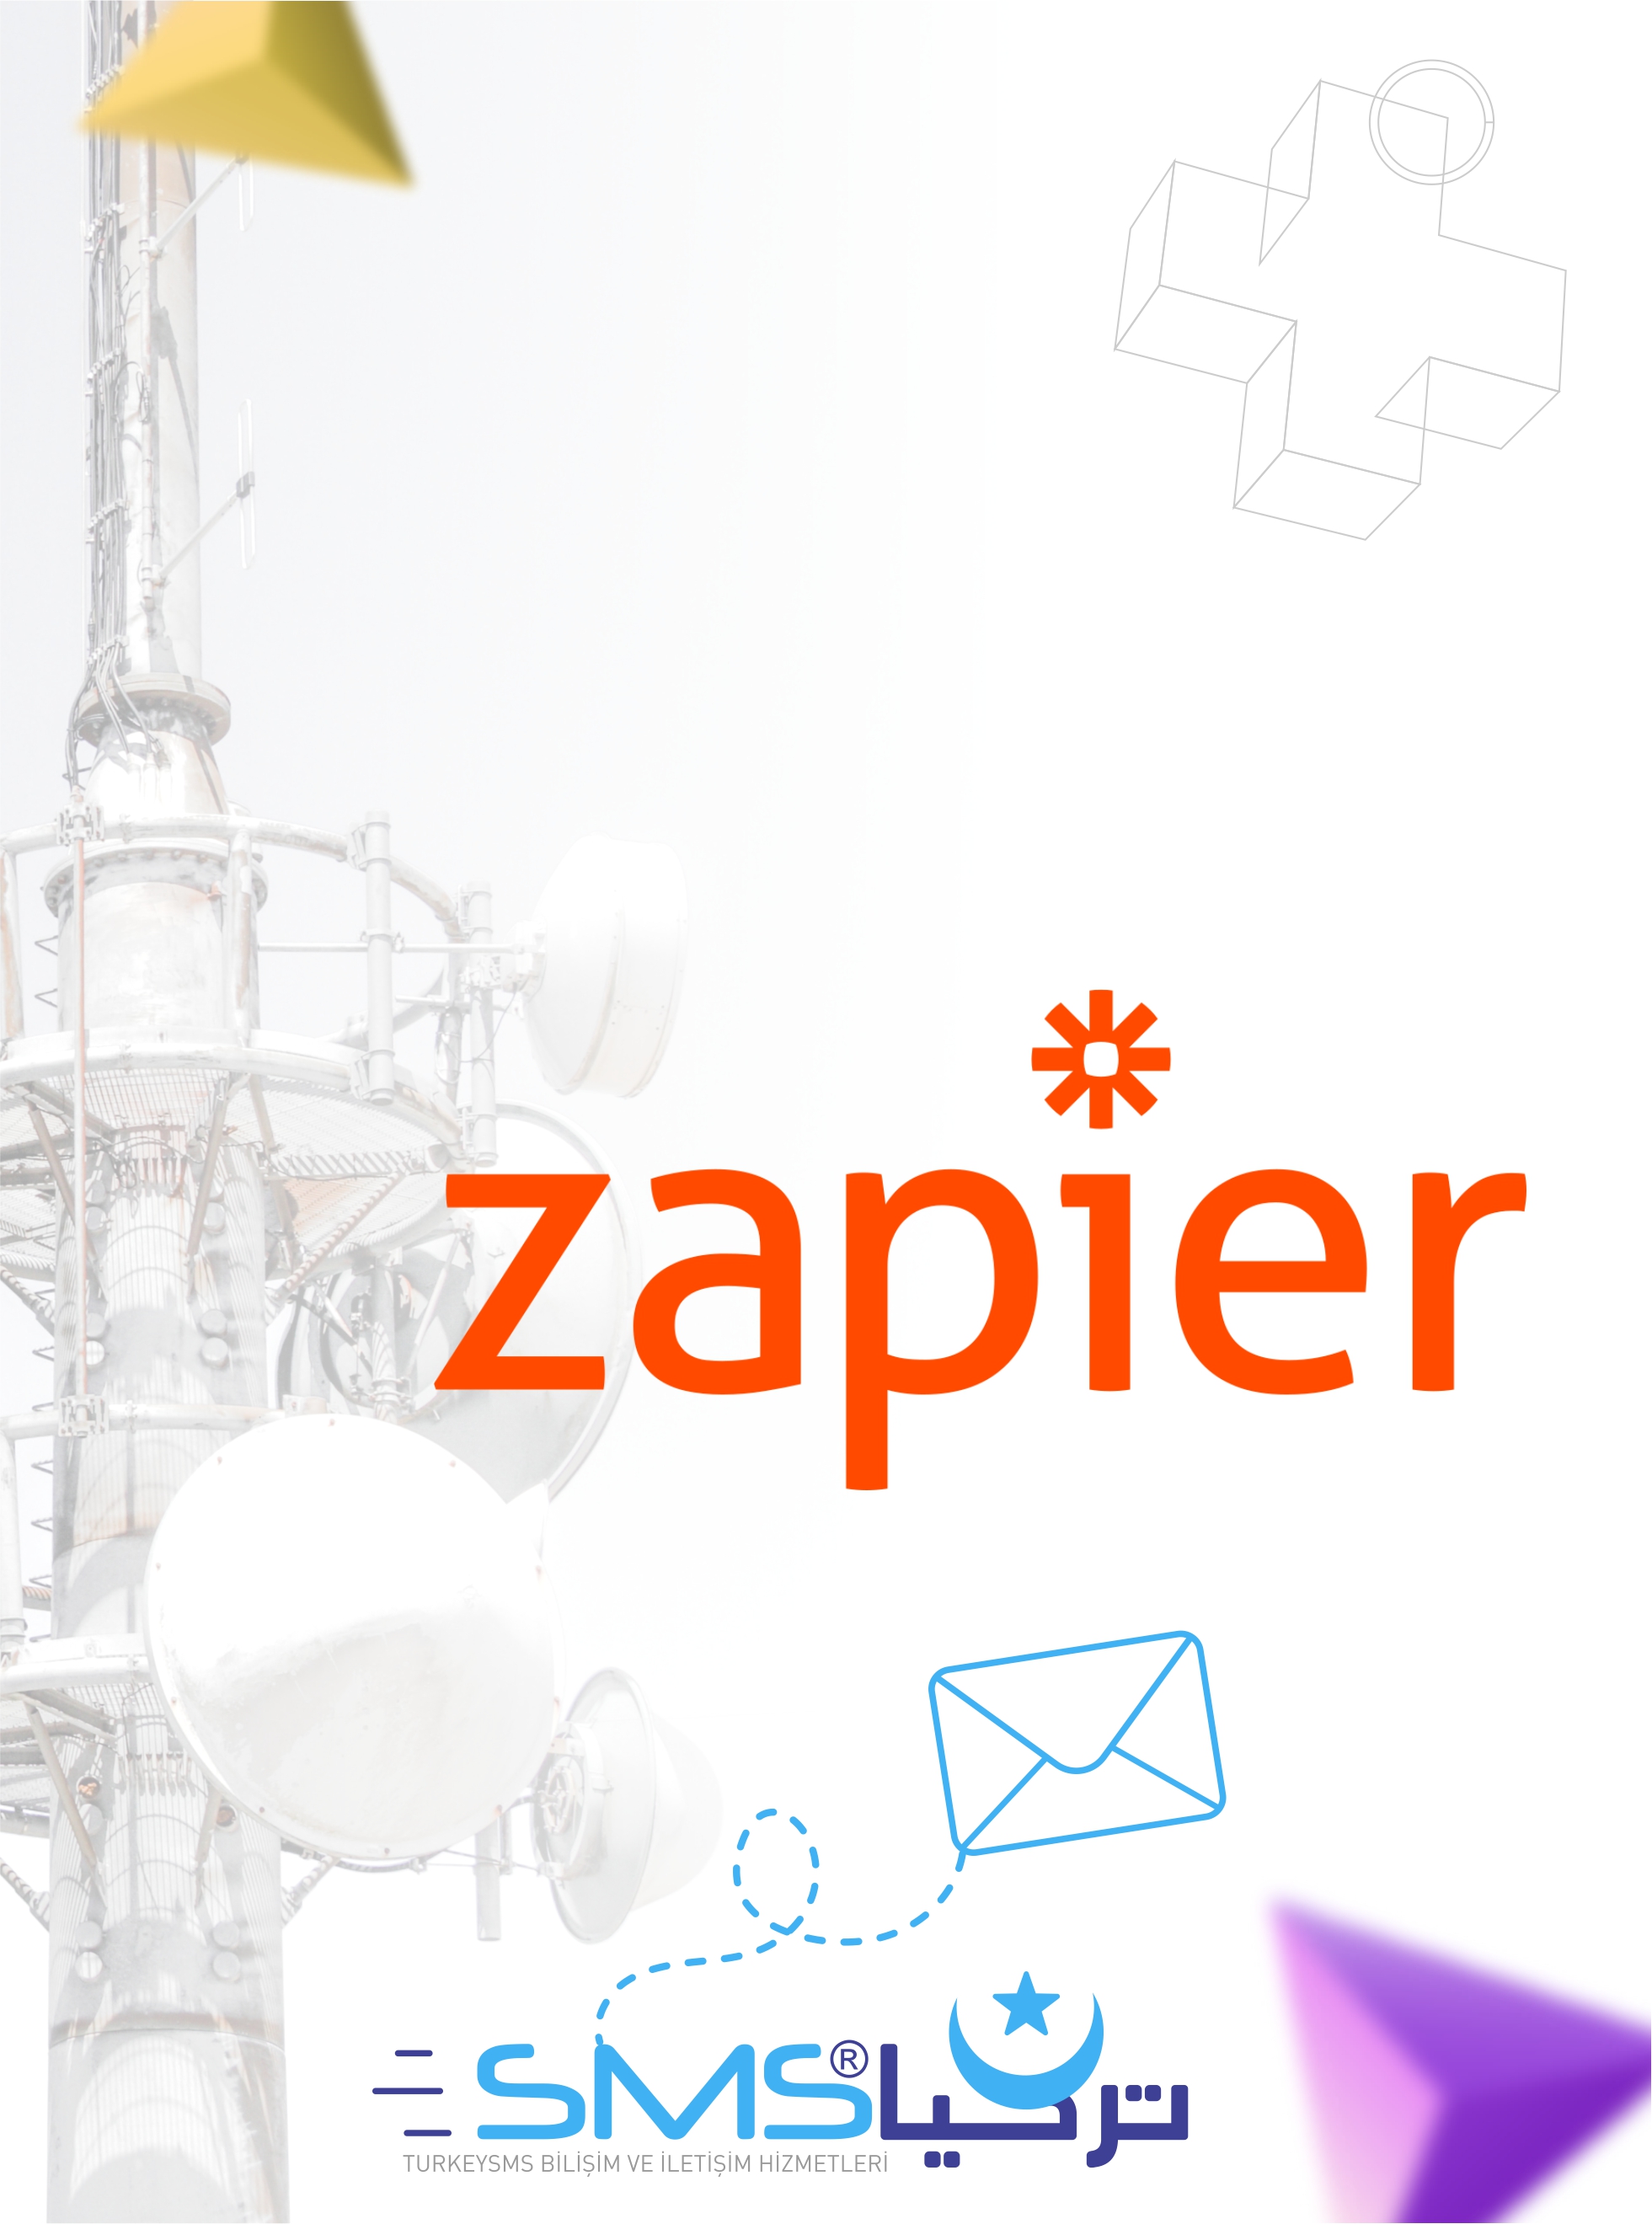 خدمة الرسائل النصية مع Zapier